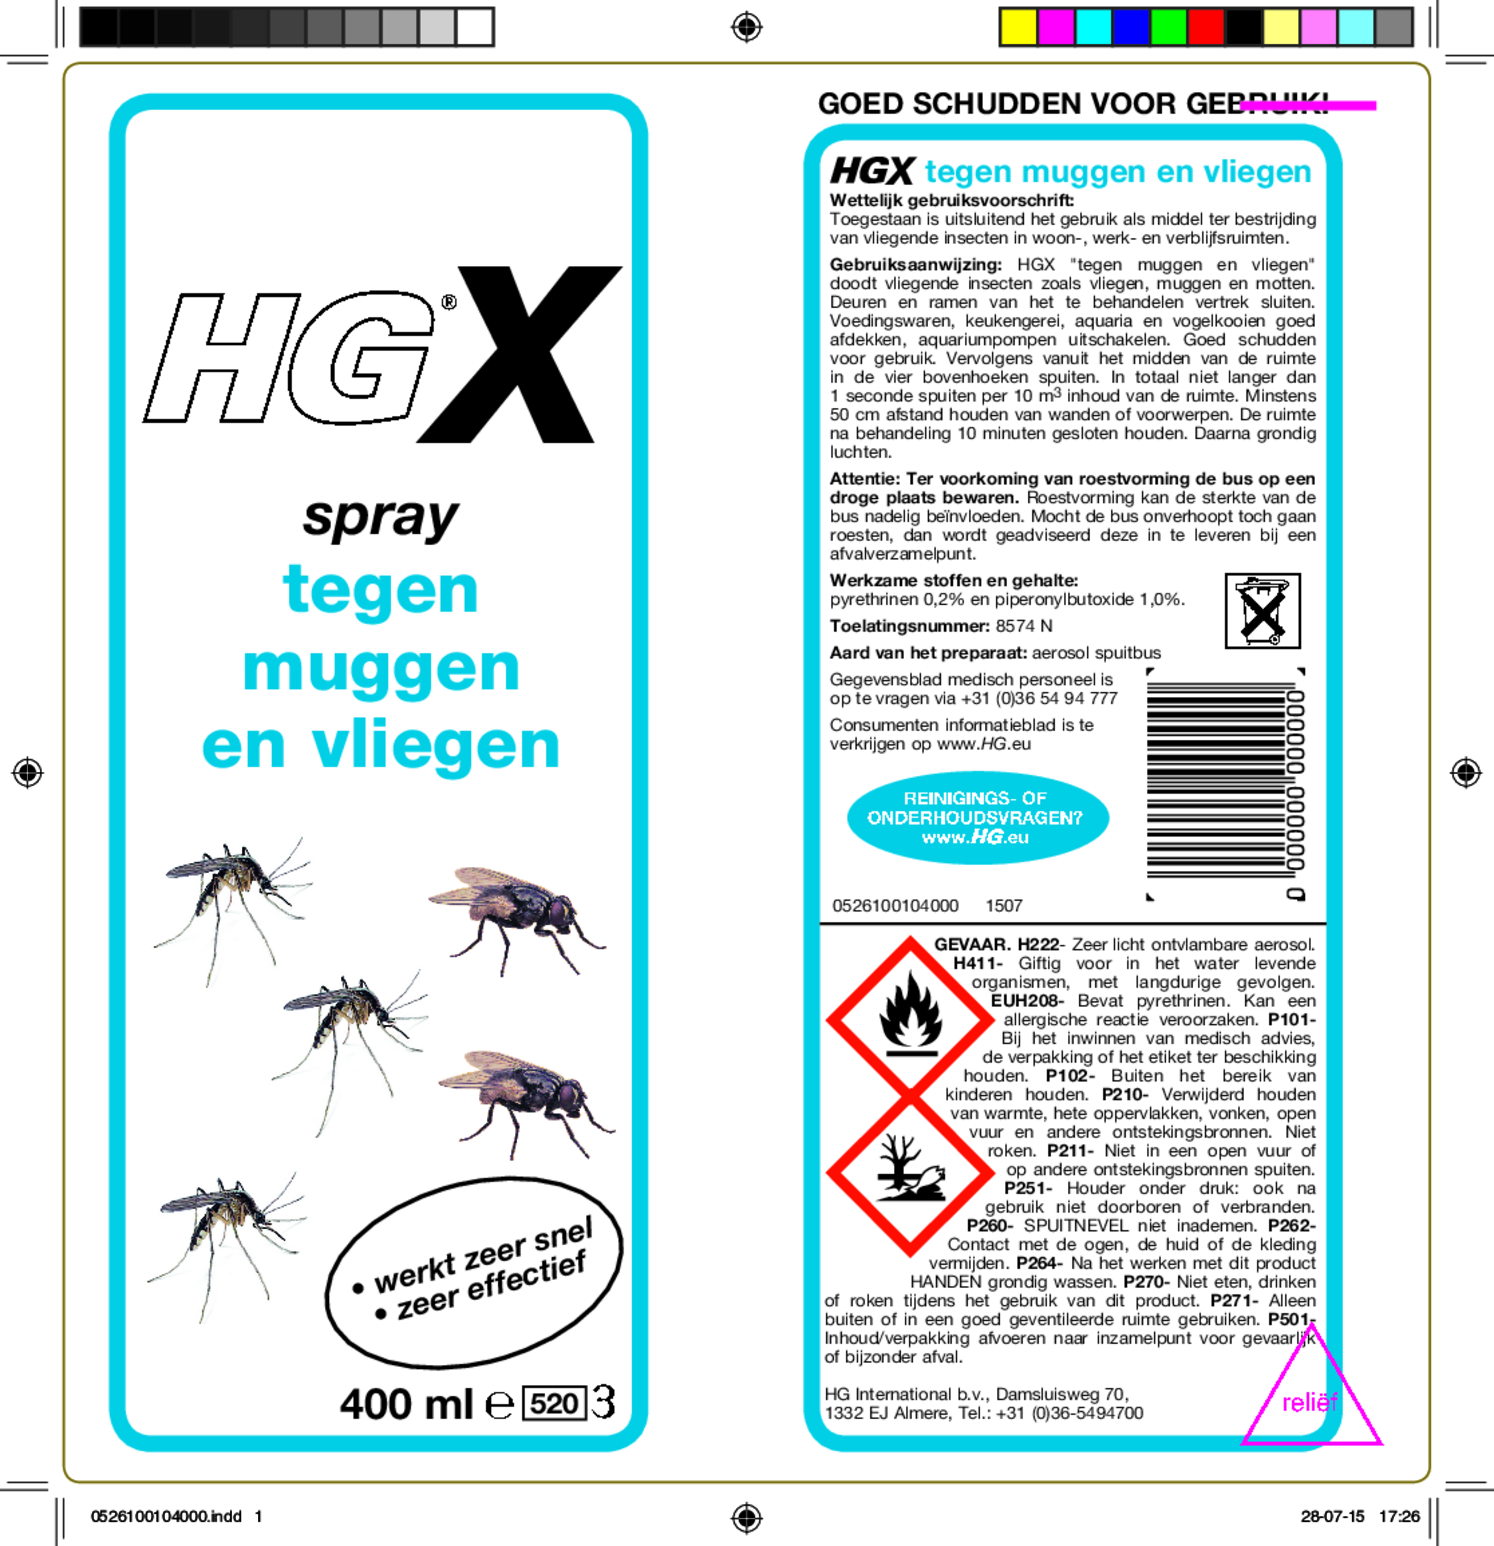 X Spray Tegen Muggen En Vliegen afbeelding van document #1, etiket